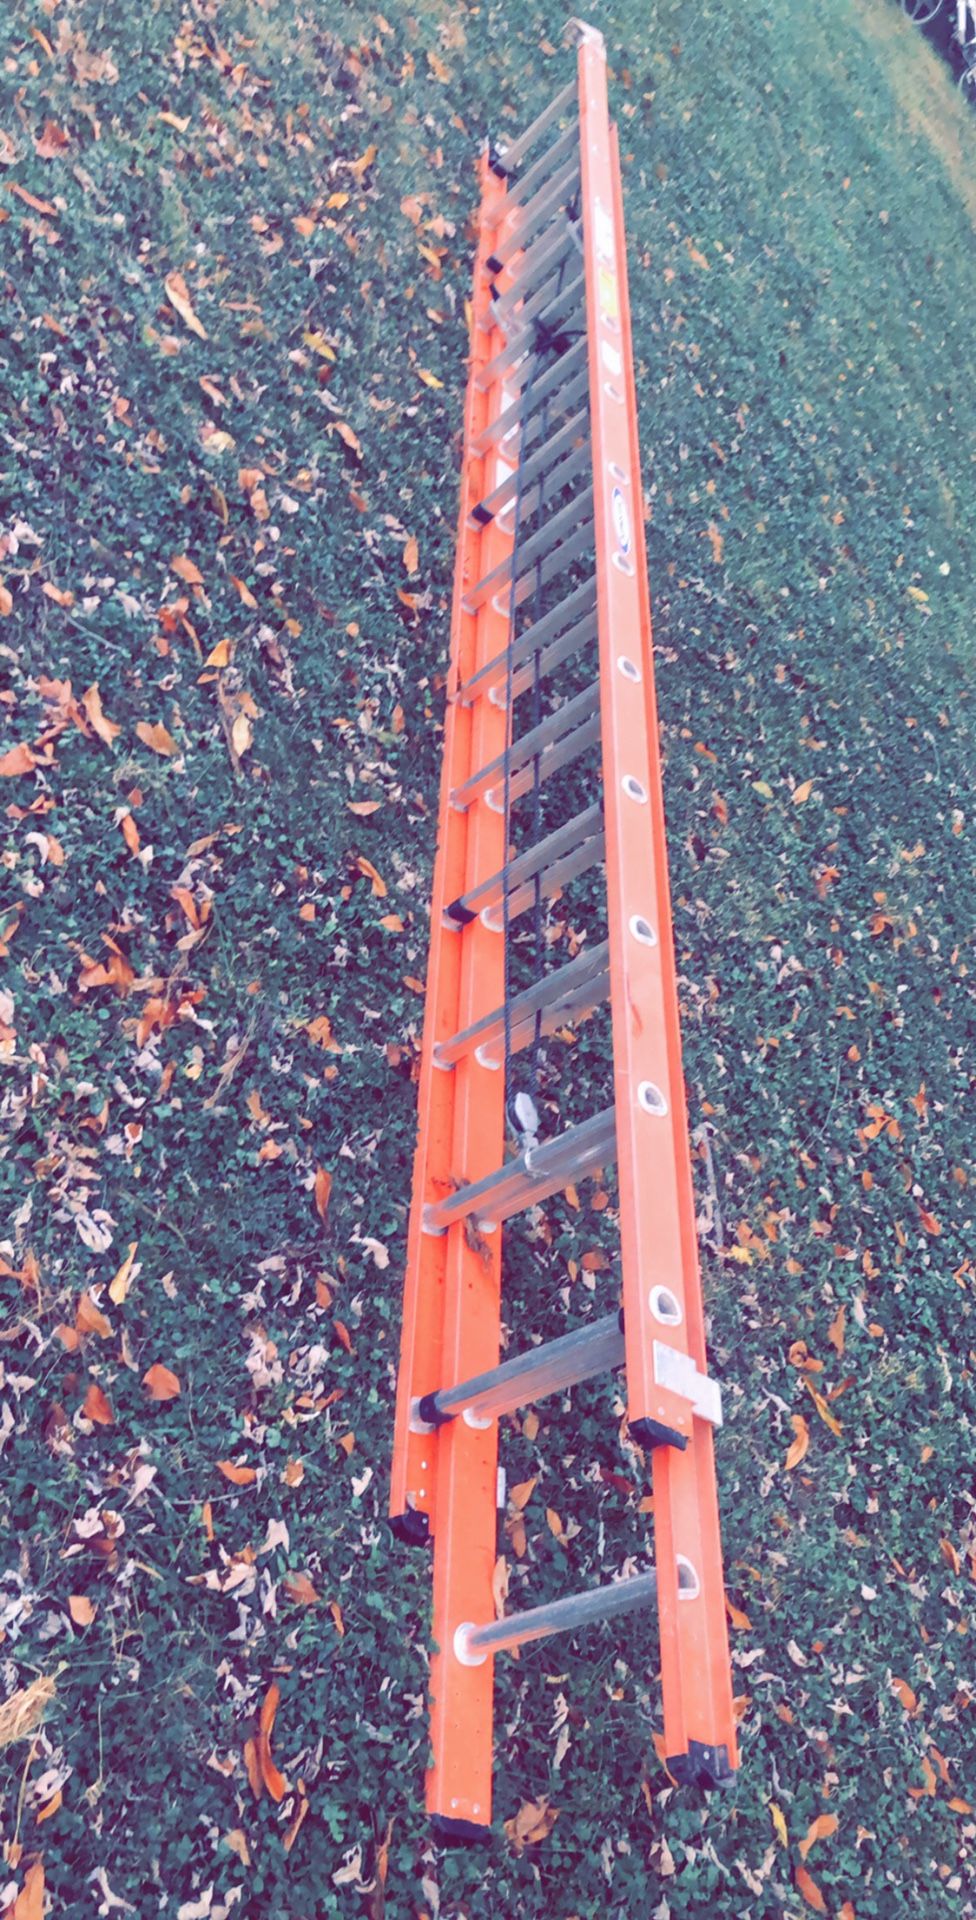 28 ladder brand new